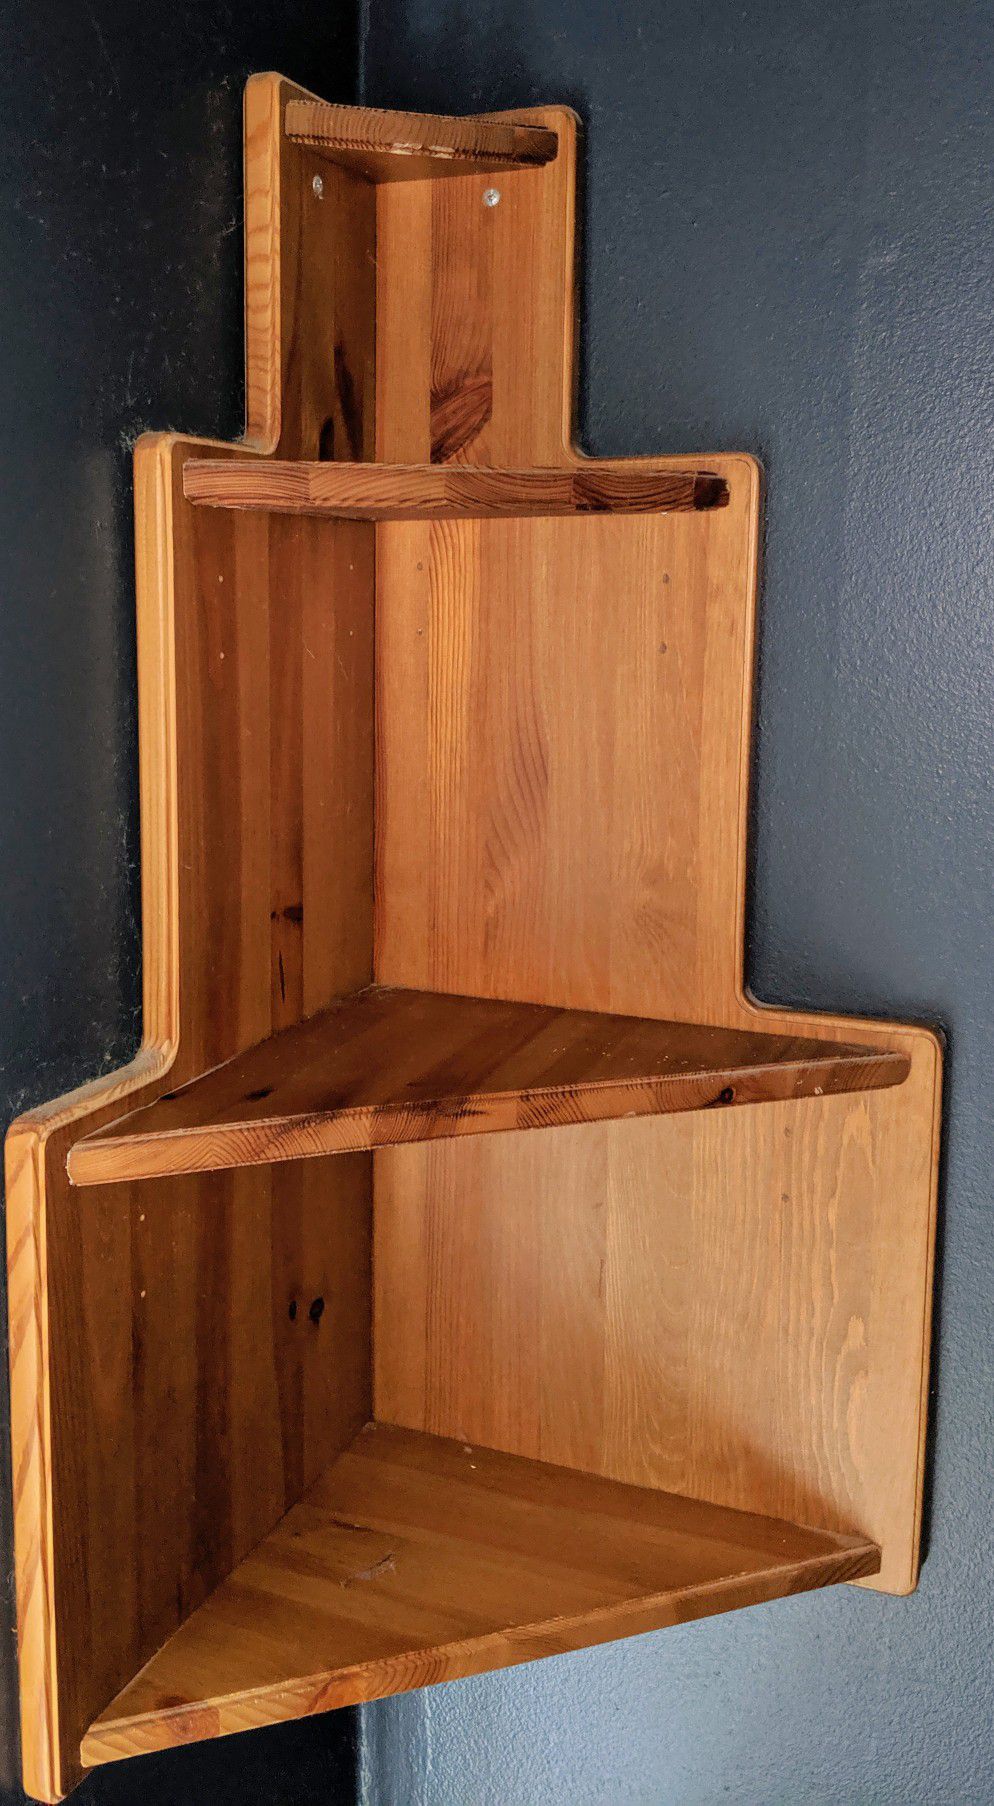 Ikea wood corner shelf